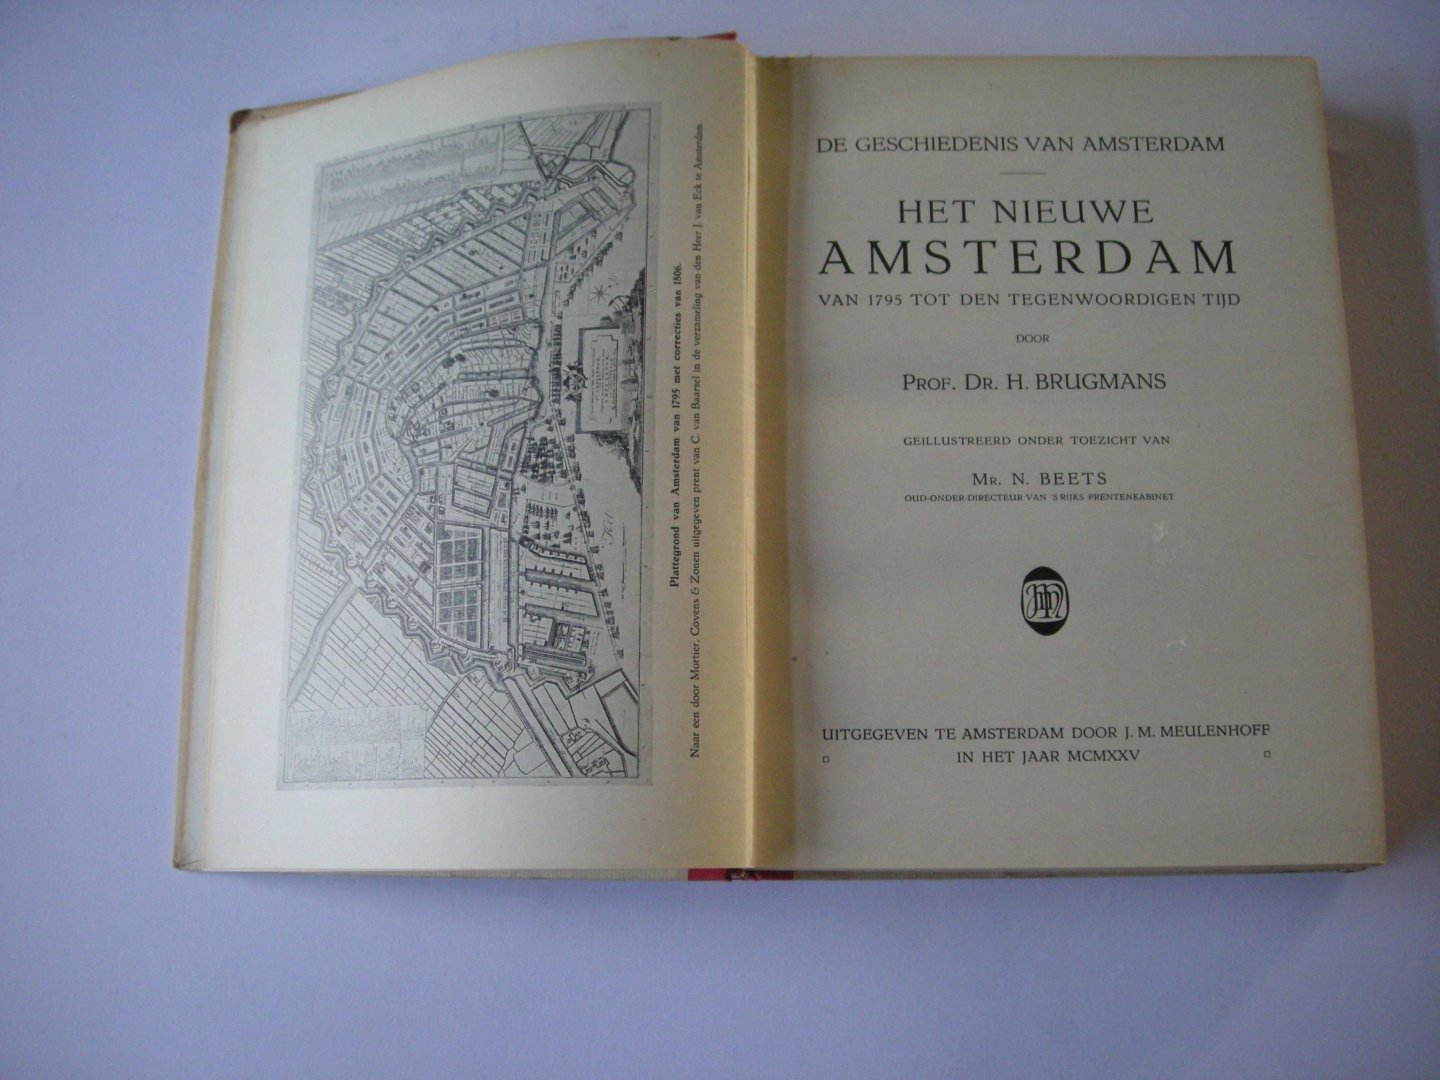 Brugmans, Prof.Dr. H. / Beets, Mr. N. illustr. - Het Nieuwe Amsterdam. Van 1795 tot den tegenwoordigen tijd. De Geschiedenis van Amsterdam